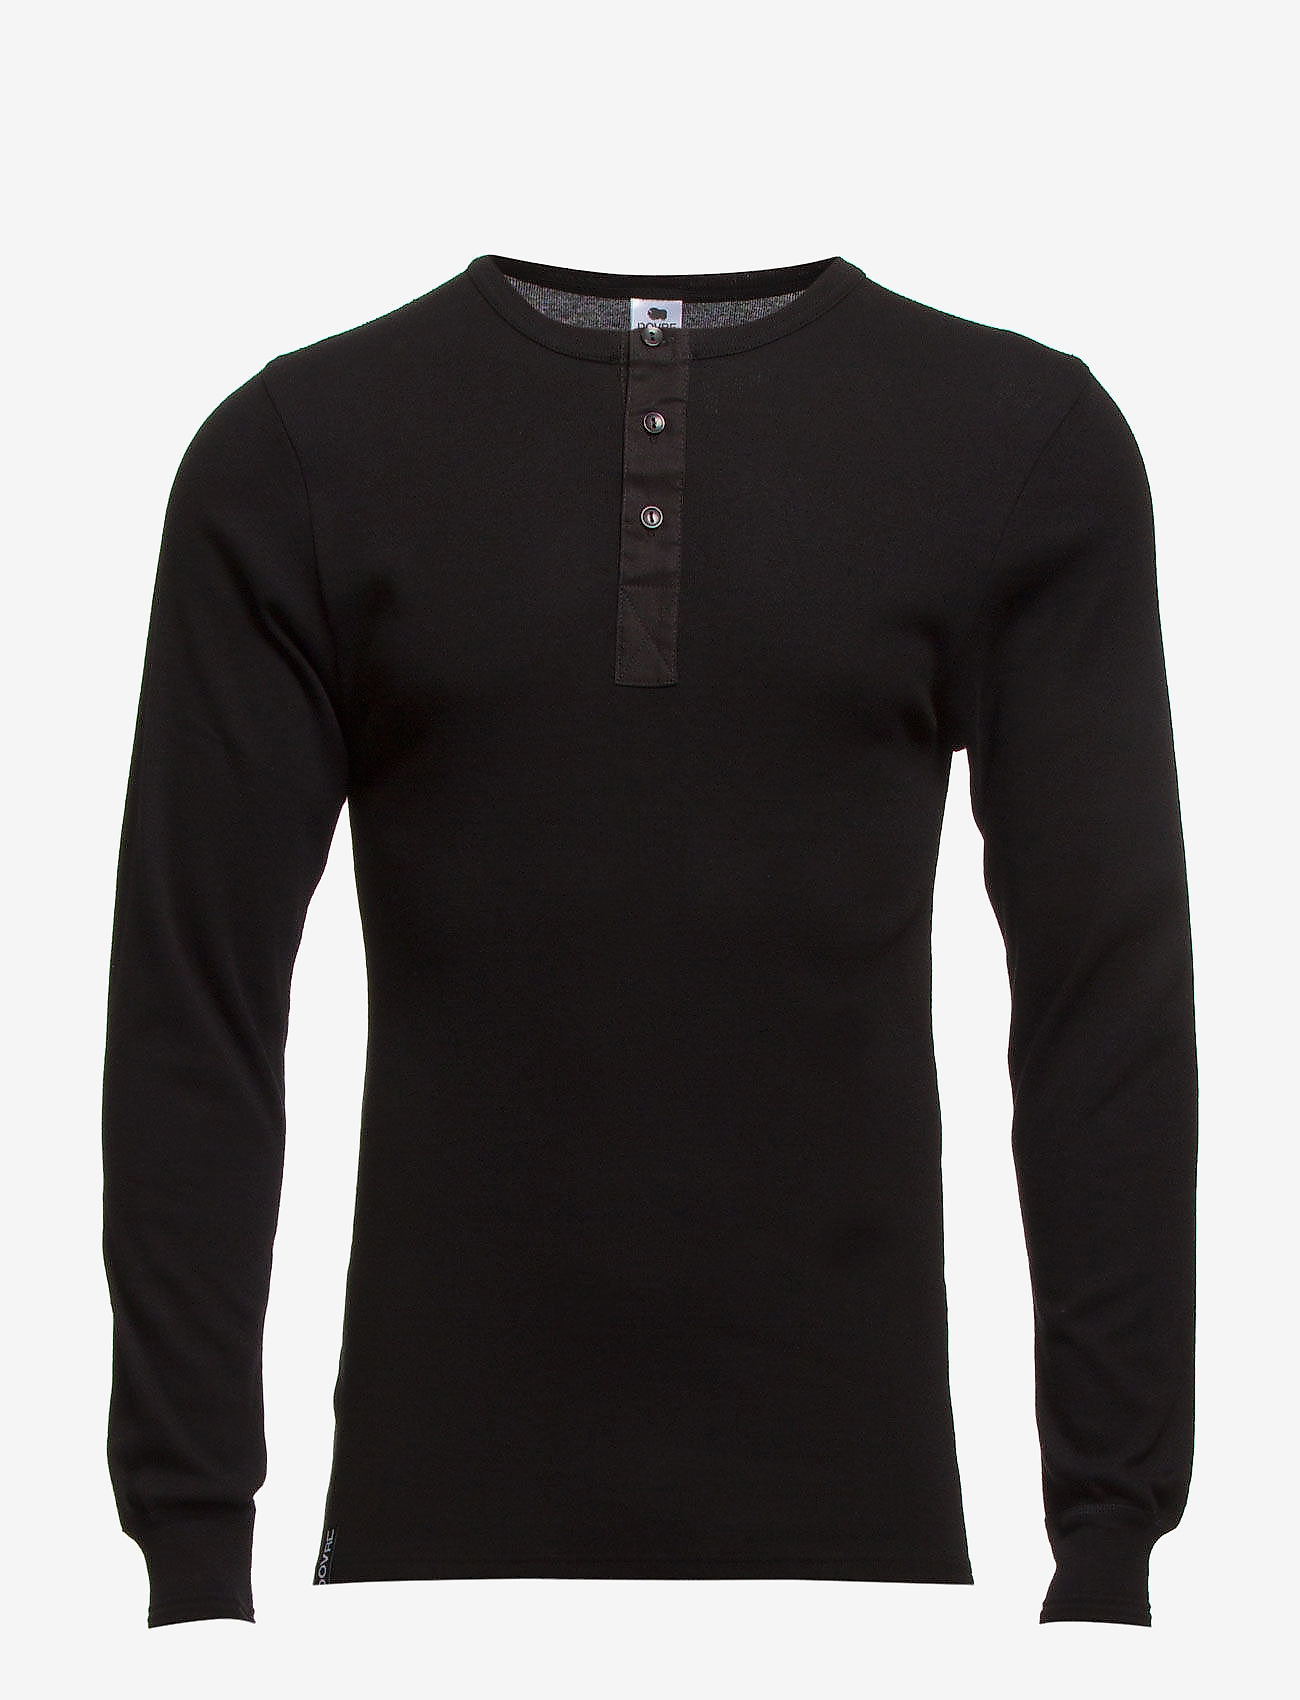 Dovre - Dovre T-shirt Long sleeves - basic t-krekli - black - 0